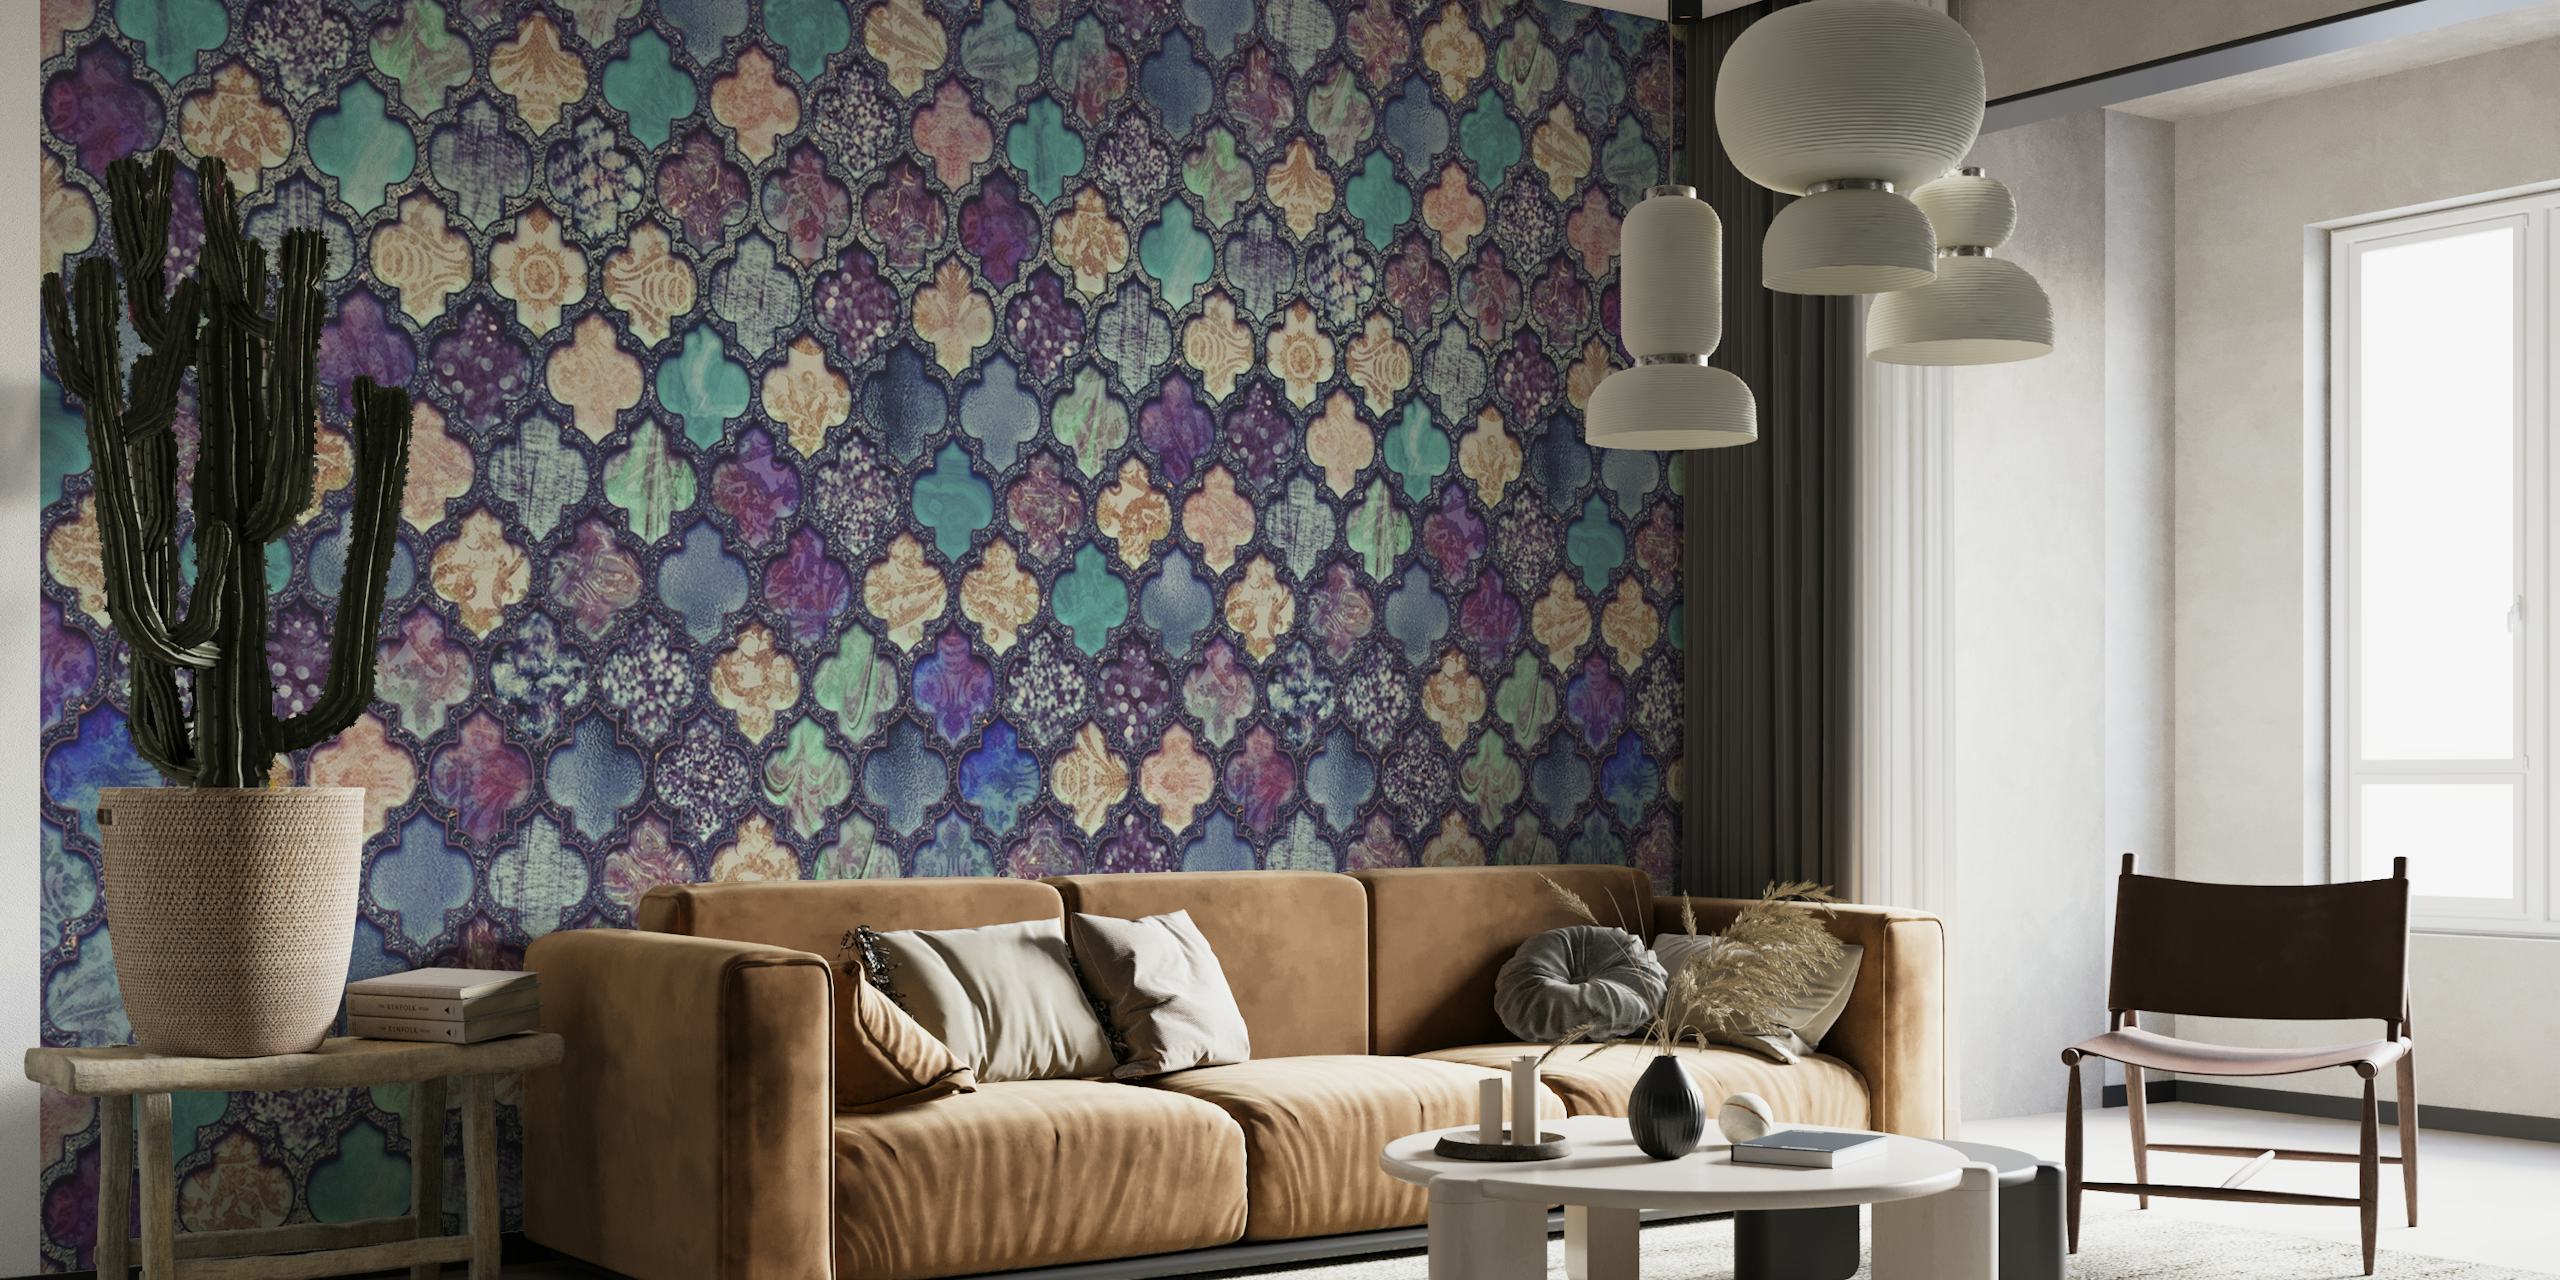 Moroccan Tiles Teal Purple behang